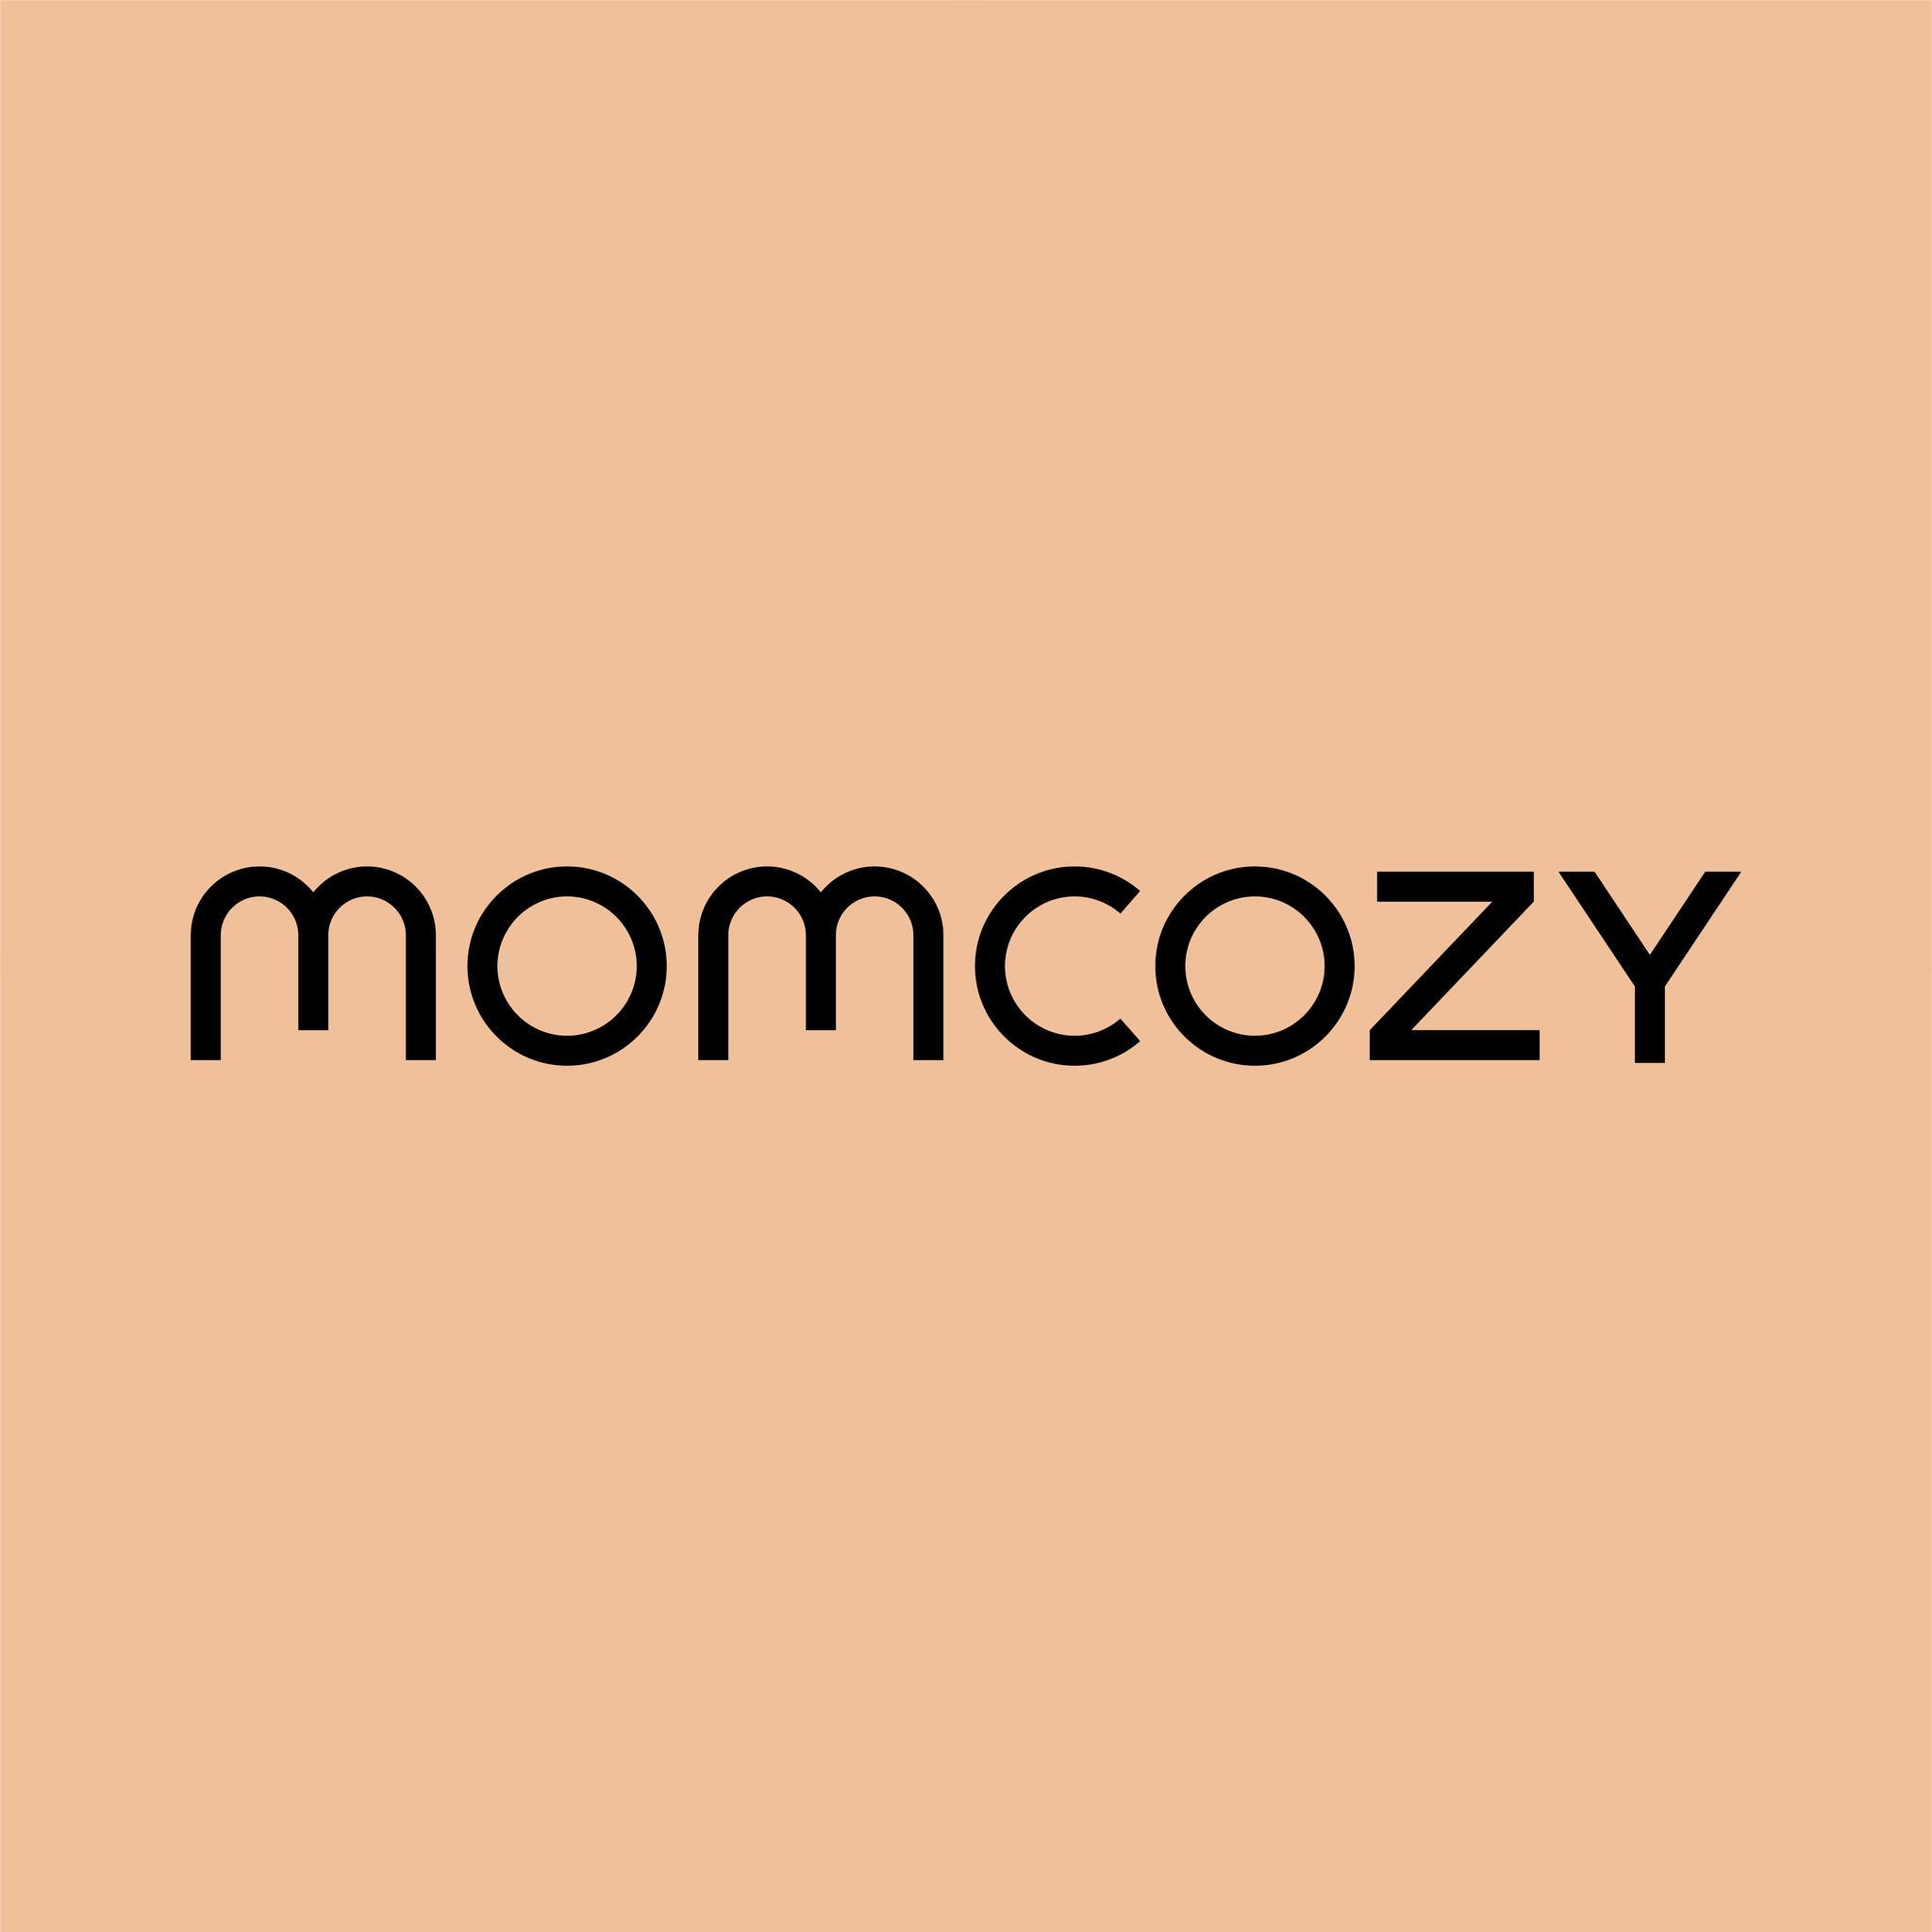 Promo codes Momcozy